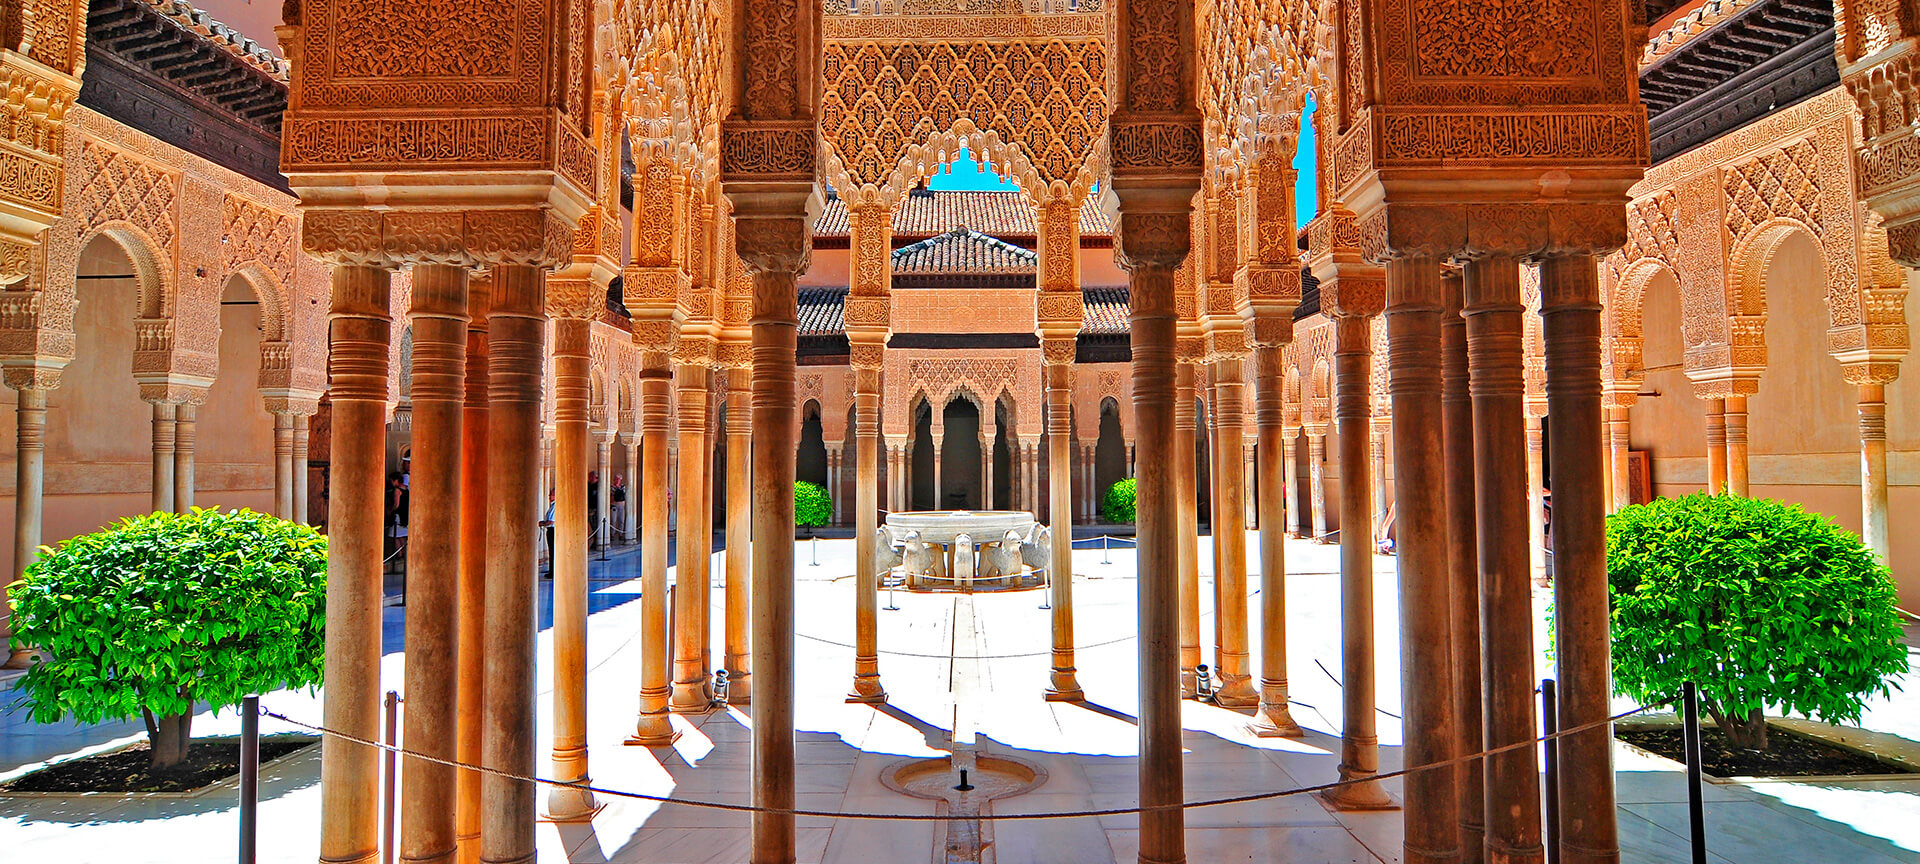 emprender Cuota Migración Recomendaciones para visitar la Alhambra de Granada | spain.info